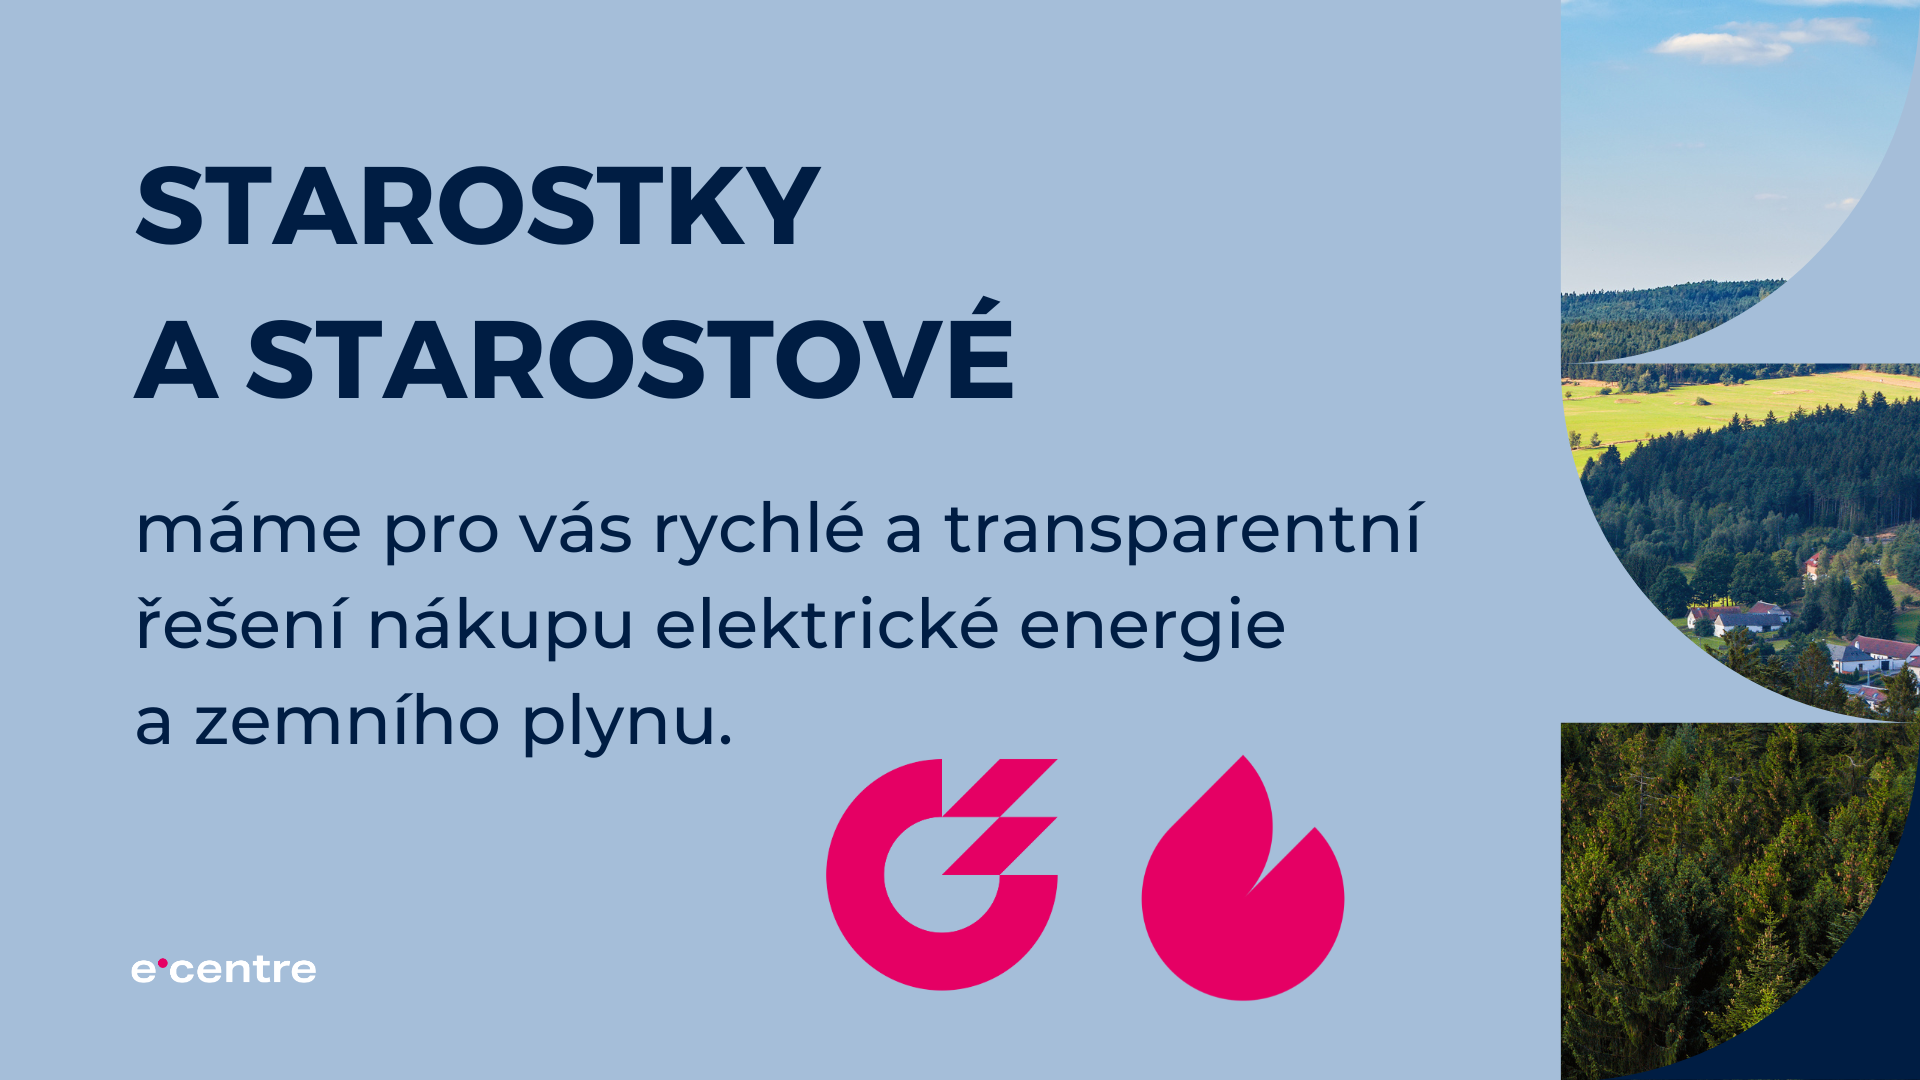 Komoditní burza Praha,<br />
Vaše řešení pro rychlý nákup energií.